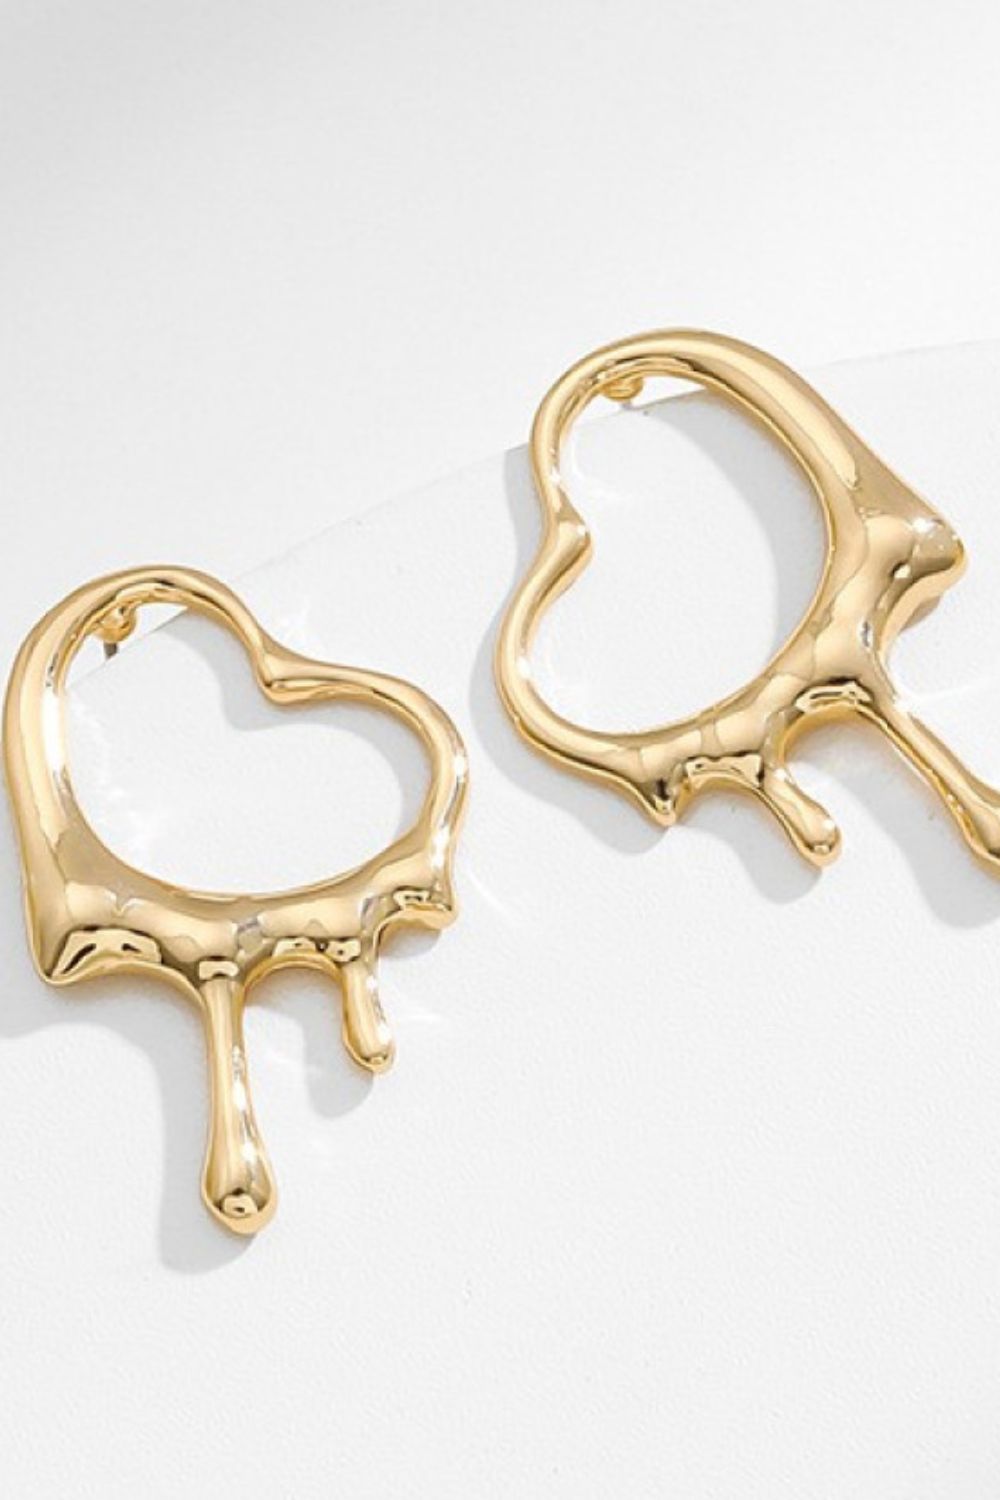 Bleeding Heart Brass Earrings in GoldEarringsBeach Rose Co.